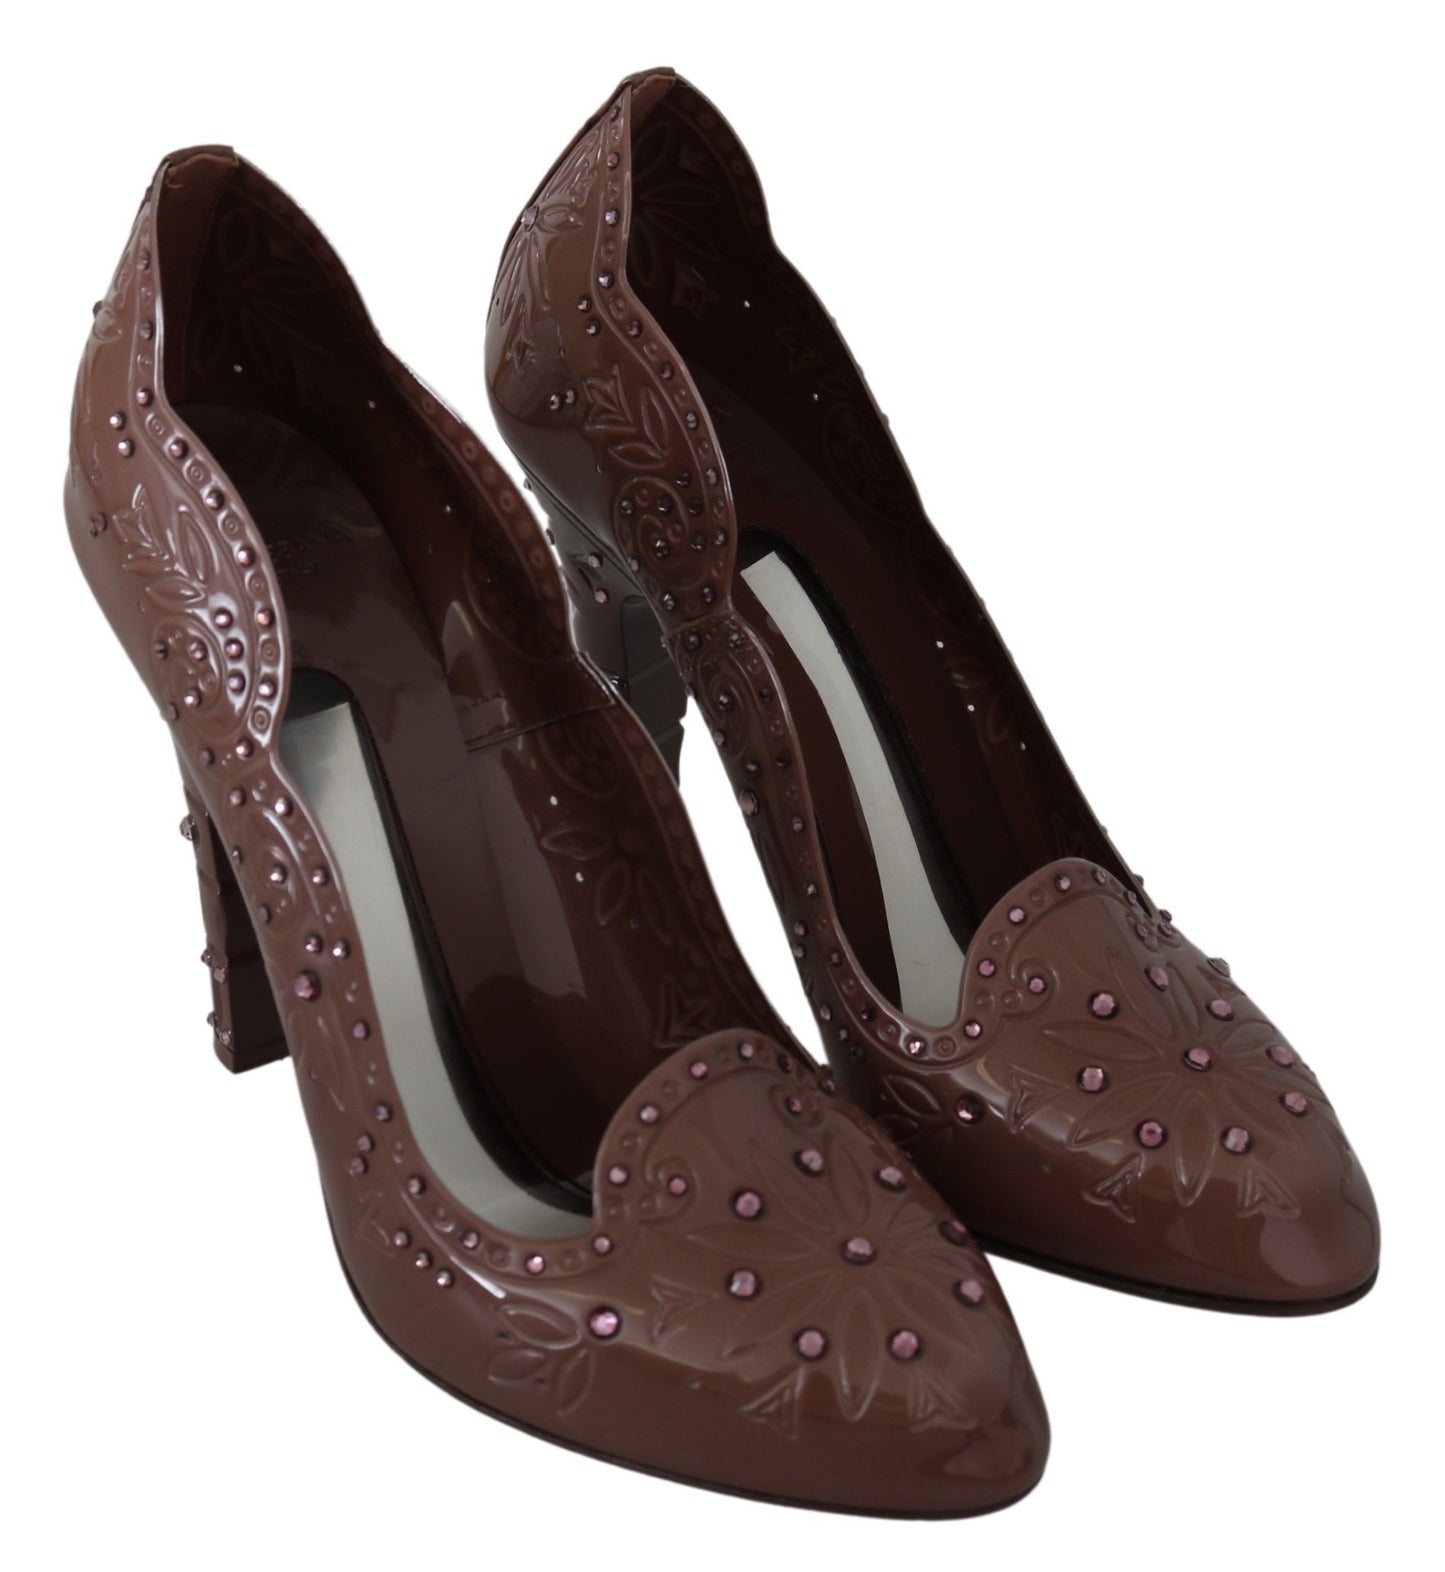 Brown Floral Crystal Heels CINDERELLA Shoes